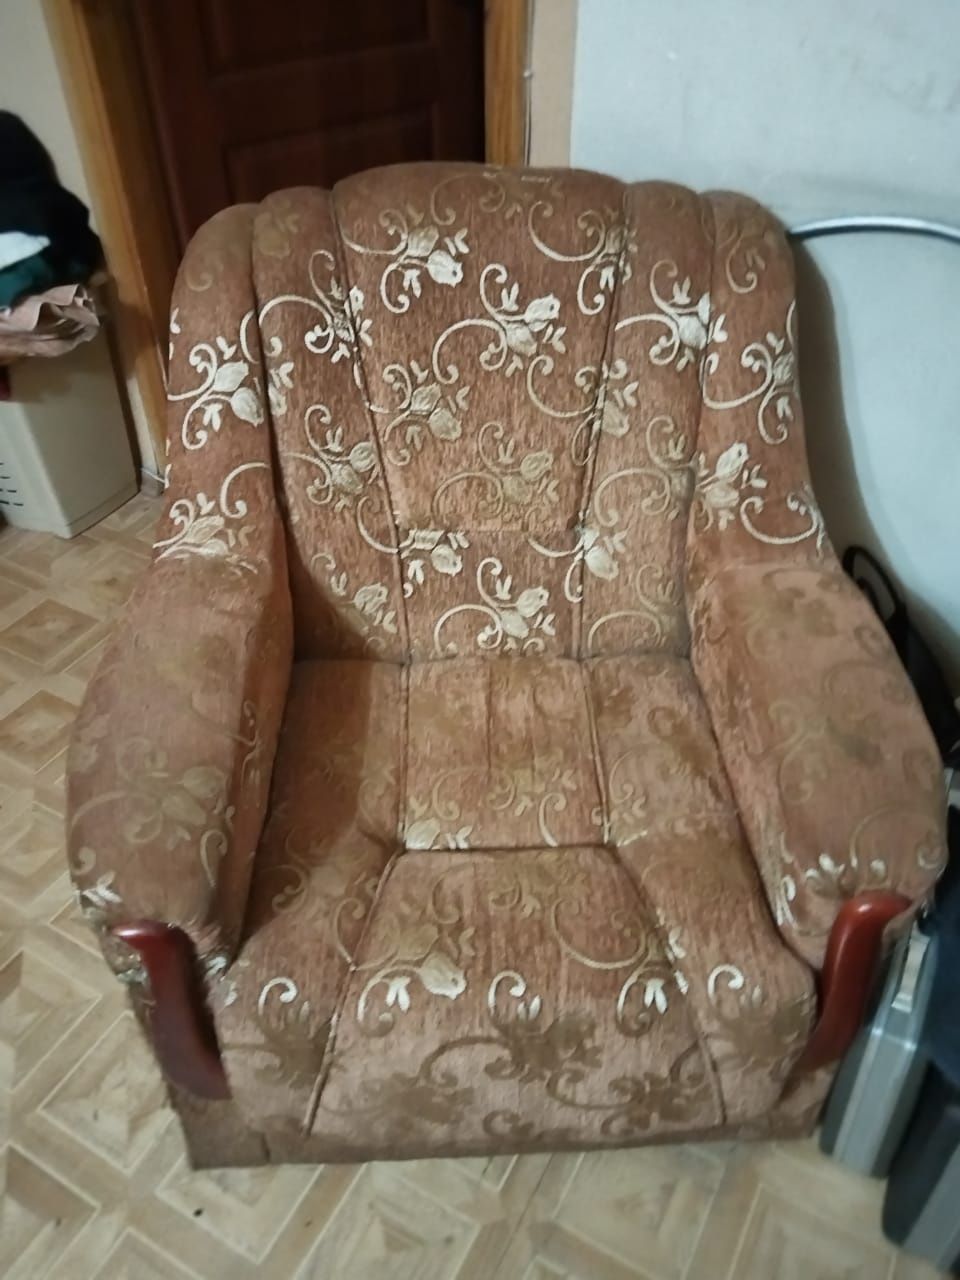 Продам диван и кресла